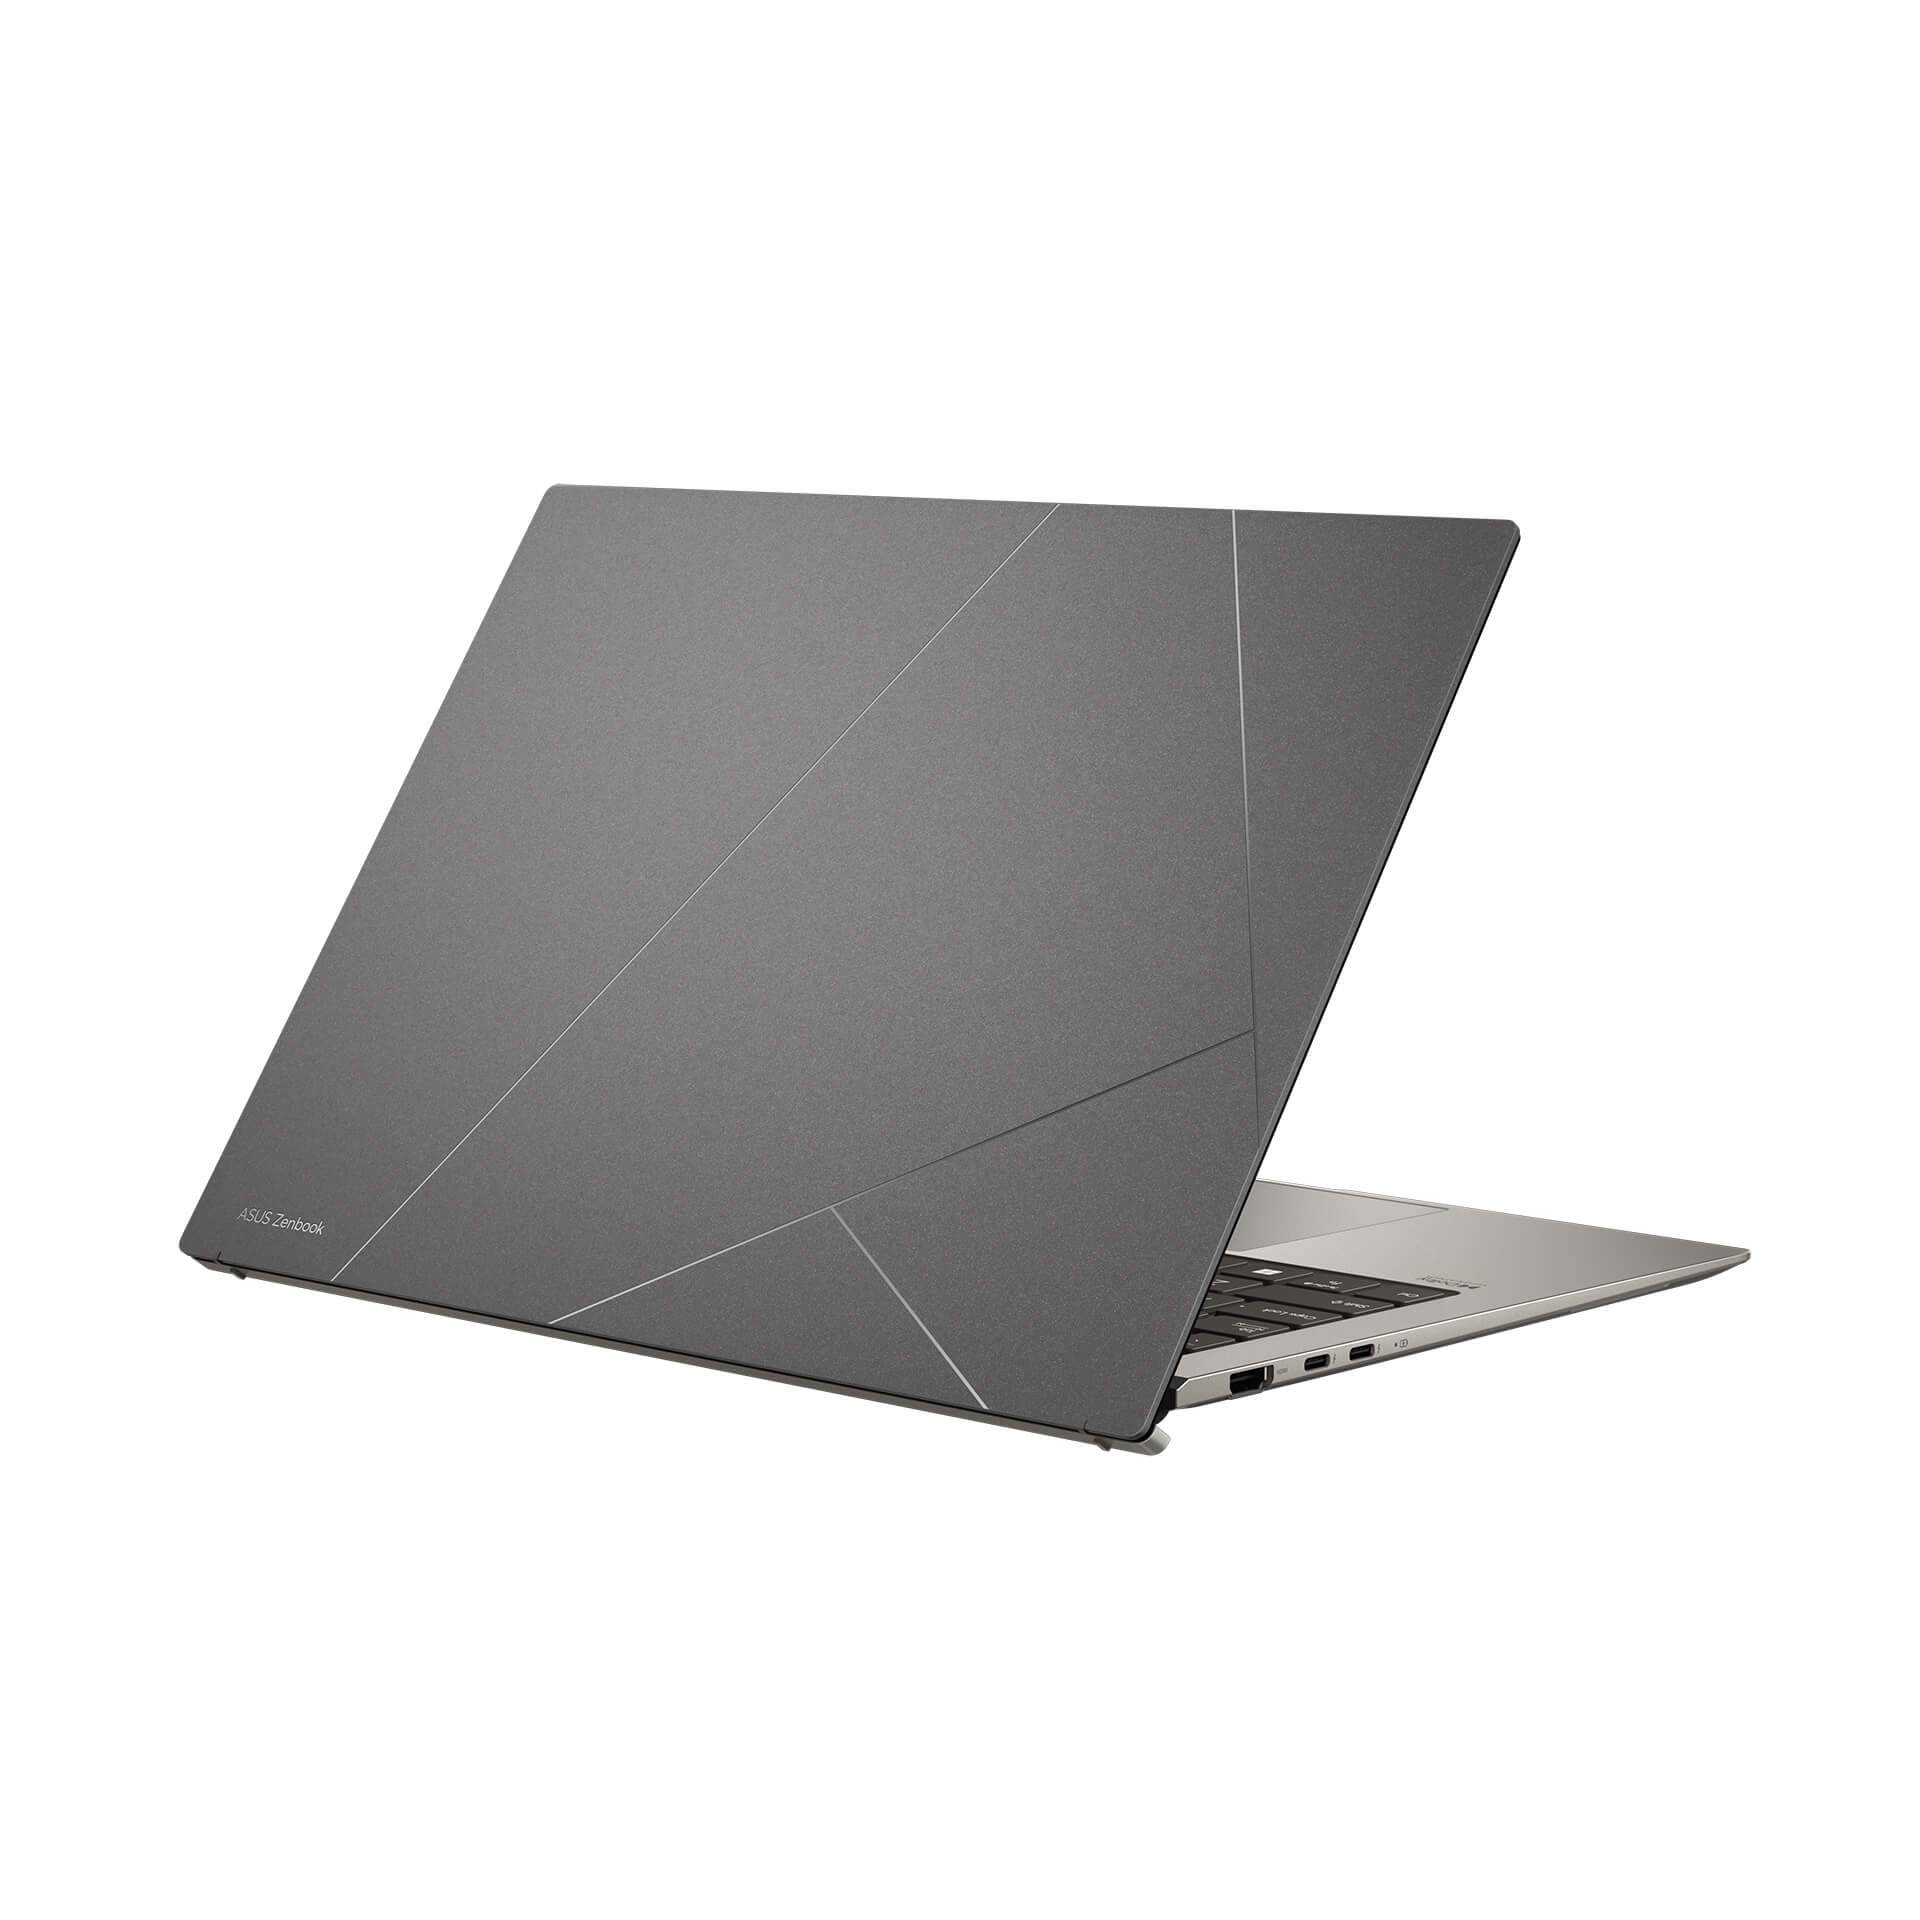 Novi Asus Zenbook najtanji je laptop od 13,3 inča na svijetu